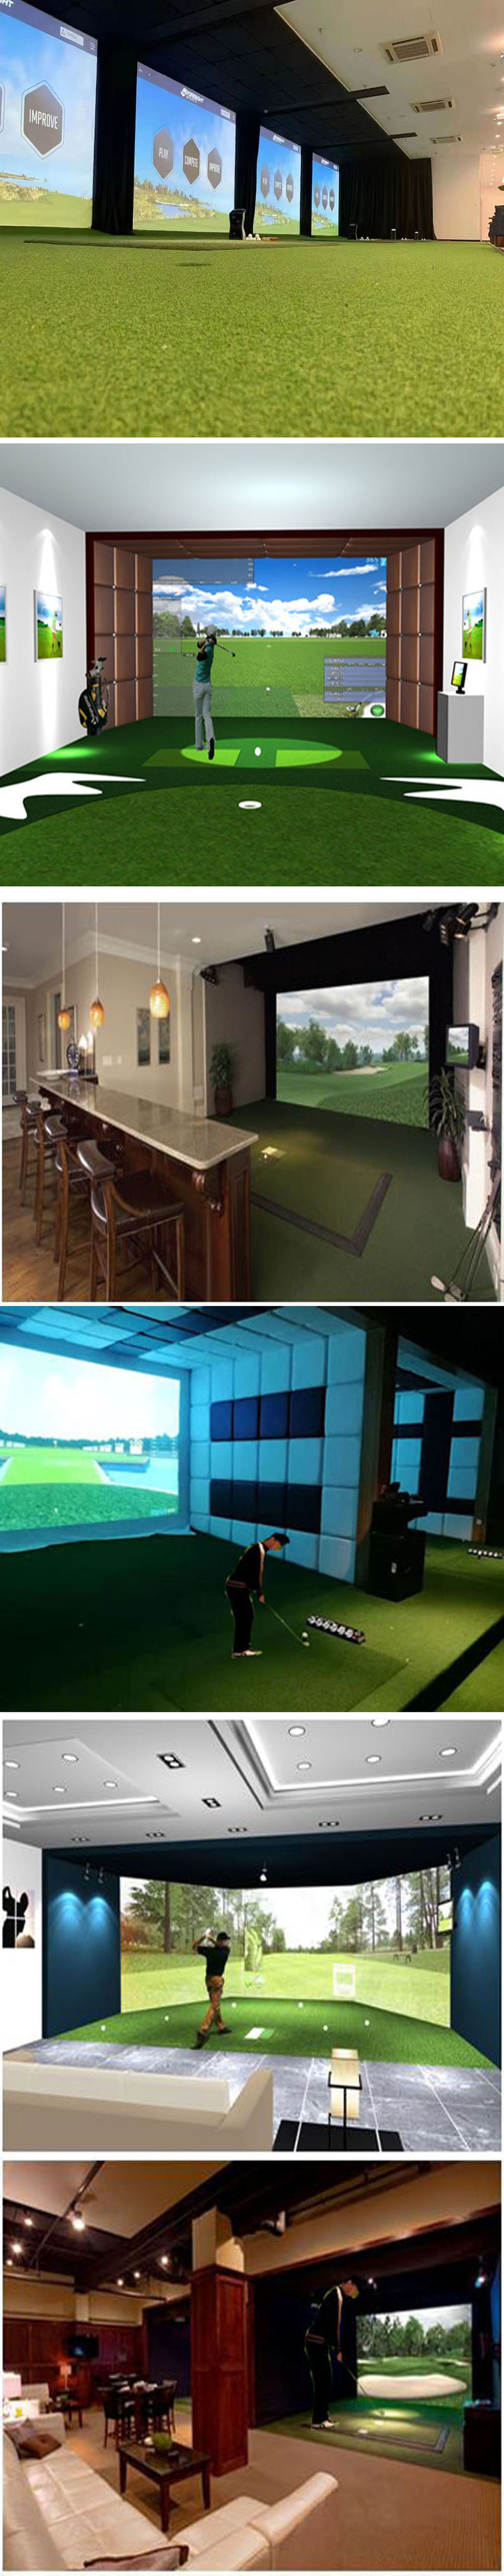 室内高尔夫模拟系统挥杆 三.jpg